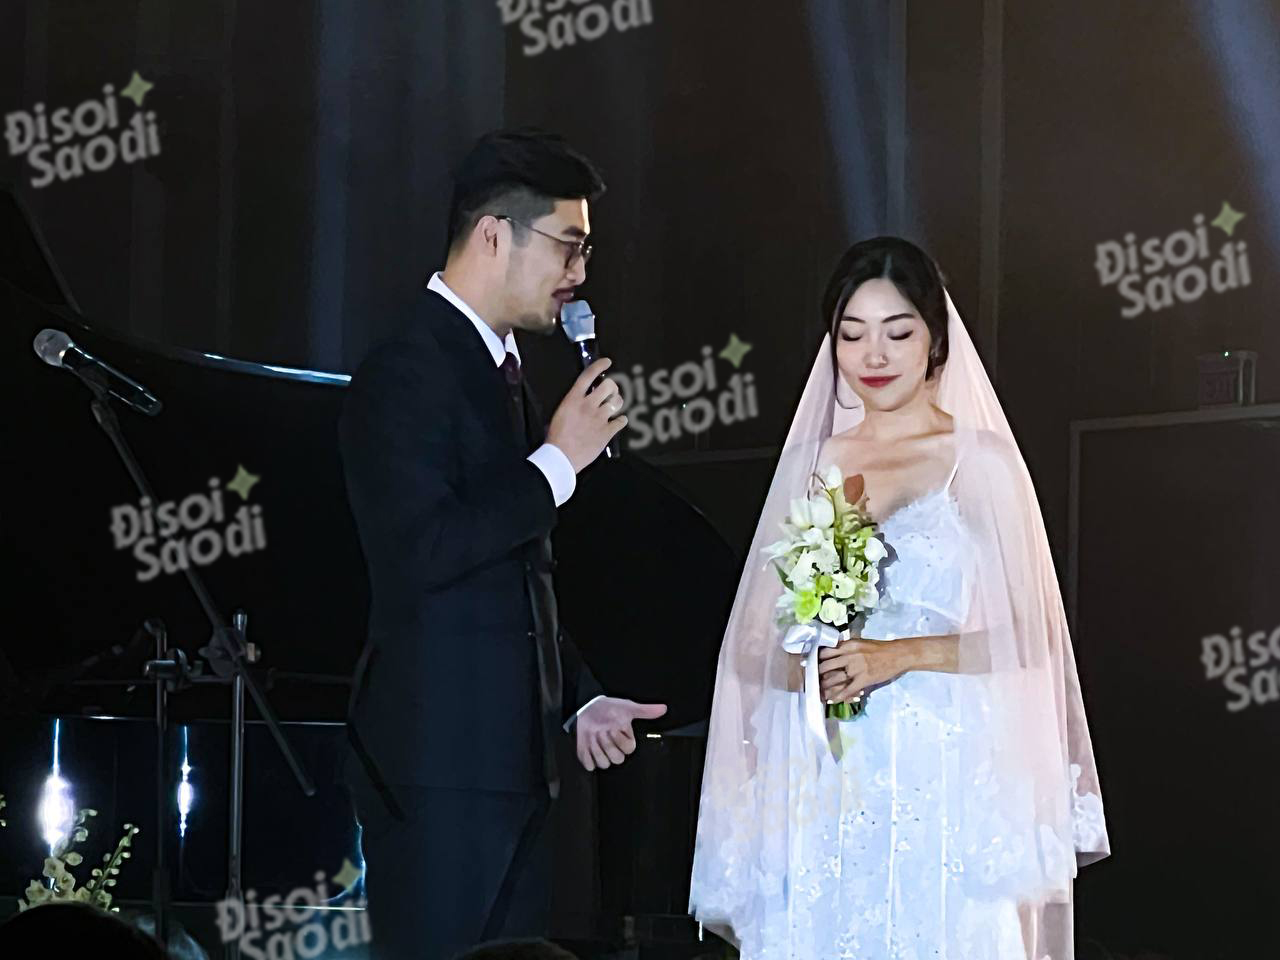 HOT: Vũ. bất ngờ tổ chức đám cưới tại Hà Nội, visual cô dâu chú rể nổi bật - Ảnh 5.